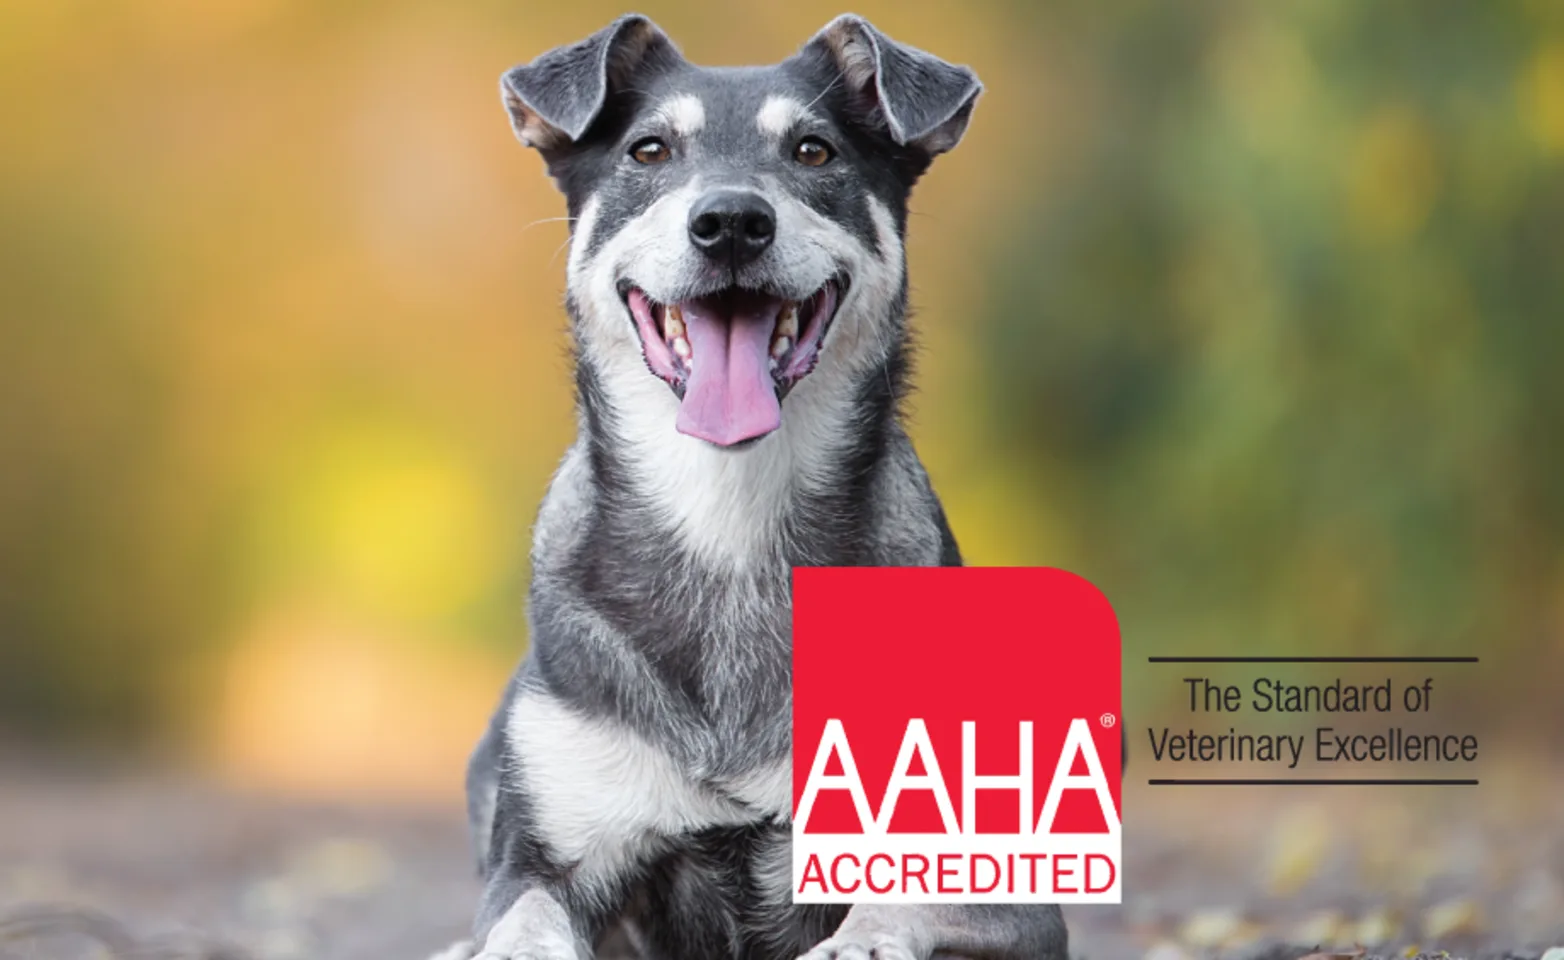 AAHA accreditation